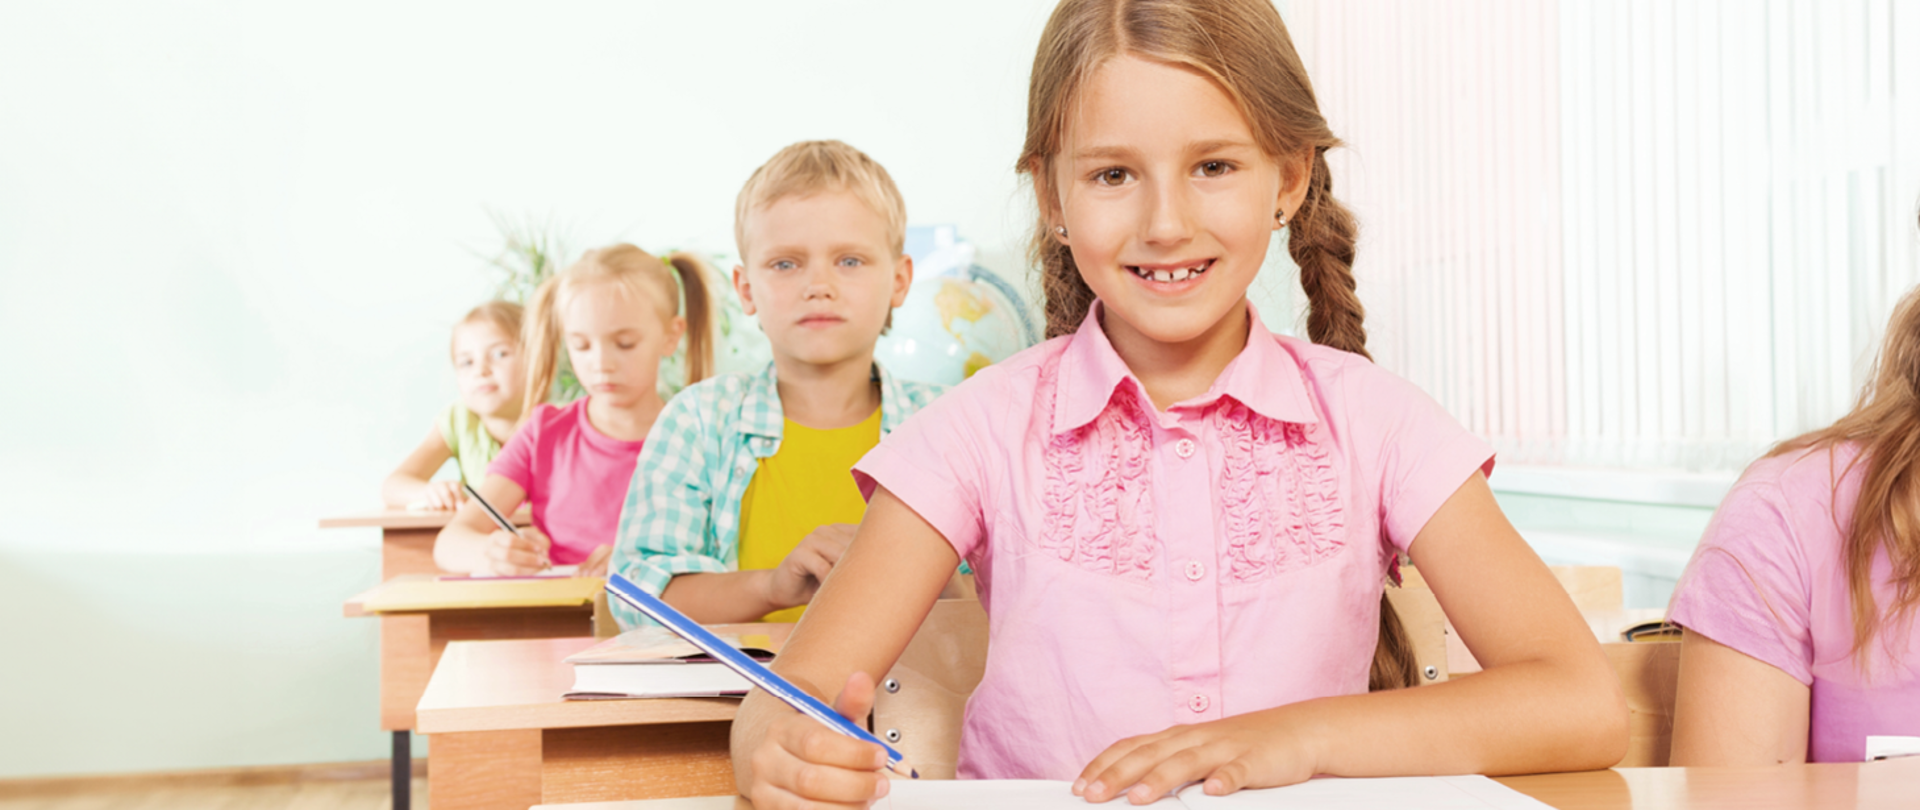 Na grafice widzimy czwórkę dzieci, siedzących w ławkach szkolnych. Na pierwszym planie widzimy uśmiechniętą dziewczynkę z dwoma długimi warkoczami ubraną w różową koszulkę trzymająca w reku ołówek , za nią siedzi chłopiec ubrany w żółty podkoszulek i zielono-białą koszule. Za nim siedzi dziewczynka ubrana w różową koszulke z dwoma kucykami na głowie trzymająca w reku ołówek. Na końcu siedzi usmiechnieta dziewczynka w zielonej koszulce. 